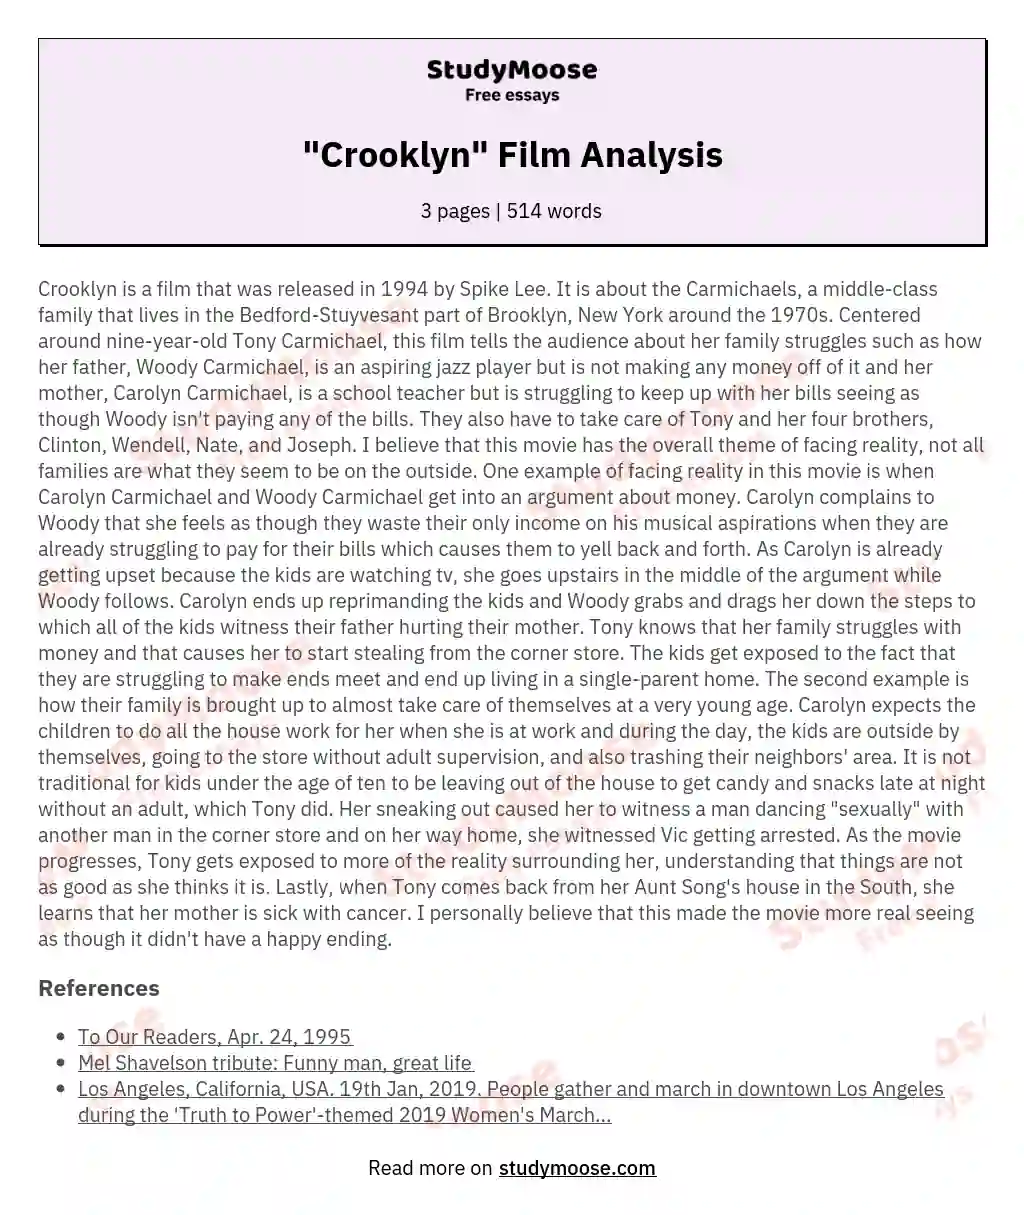 "Crooklyn" Film Analysis essay